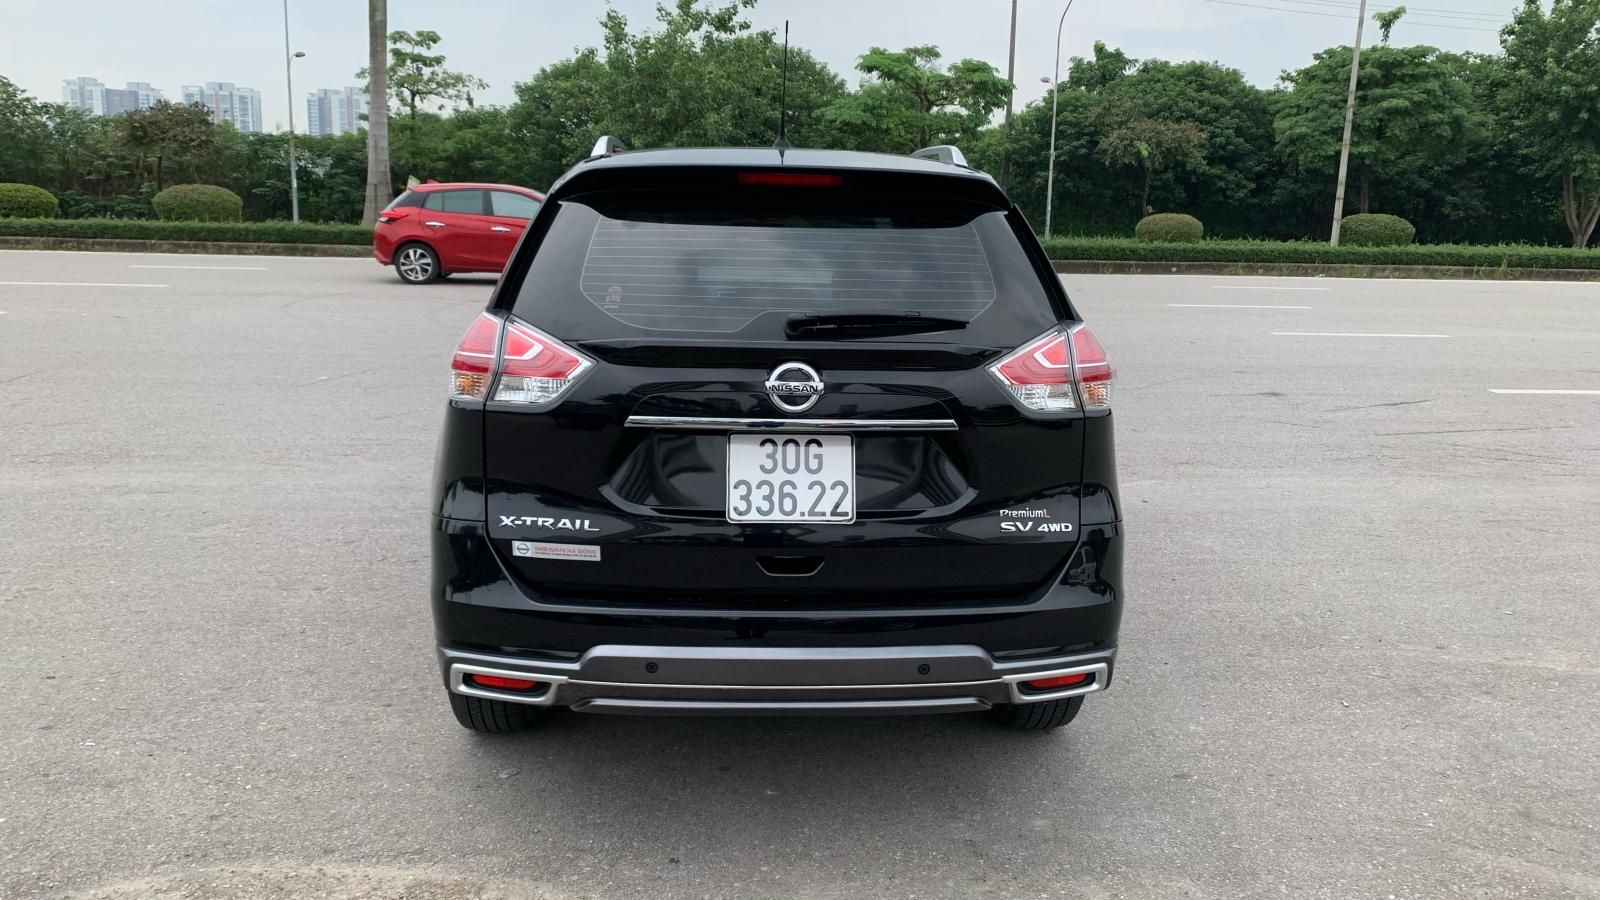 Nissan X trail 2019 - Đăng kí tư nhân 1 chủ, odo 3v5 km. Giá 828tr